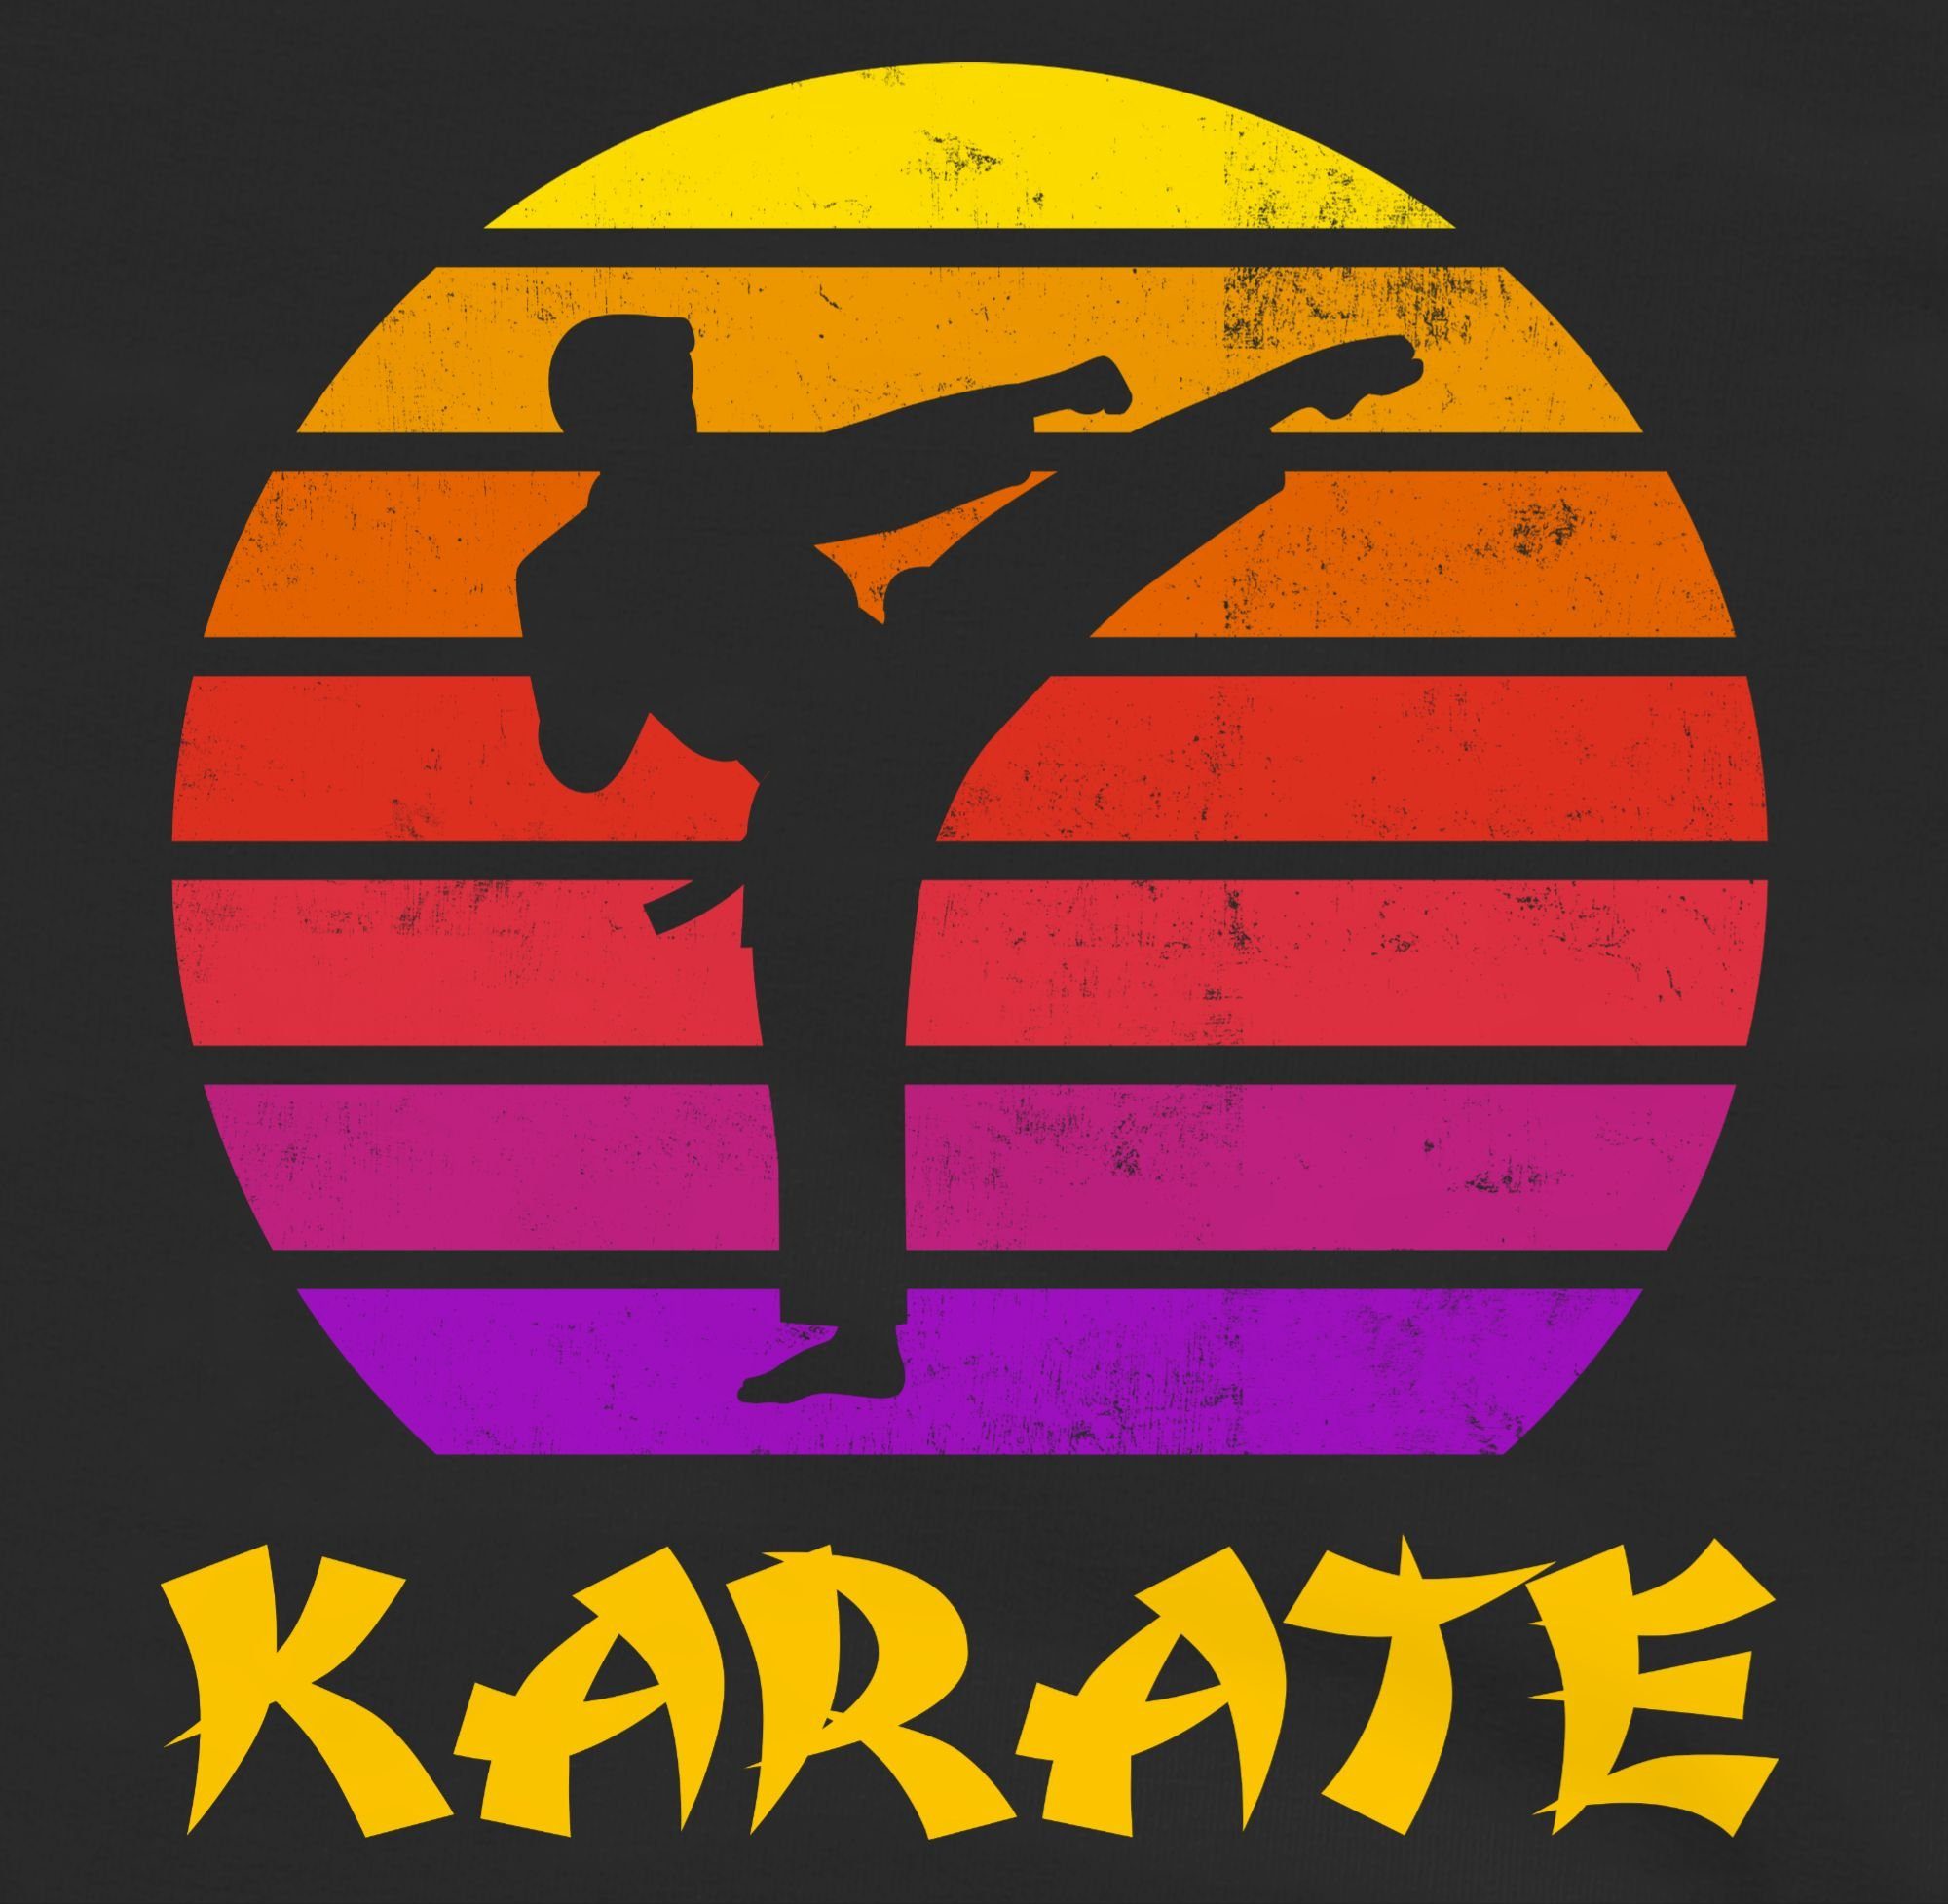 Shirtracer Sweatshirt Karate Kleidung 1 Sonne Kinder Retro Sport Schwarz